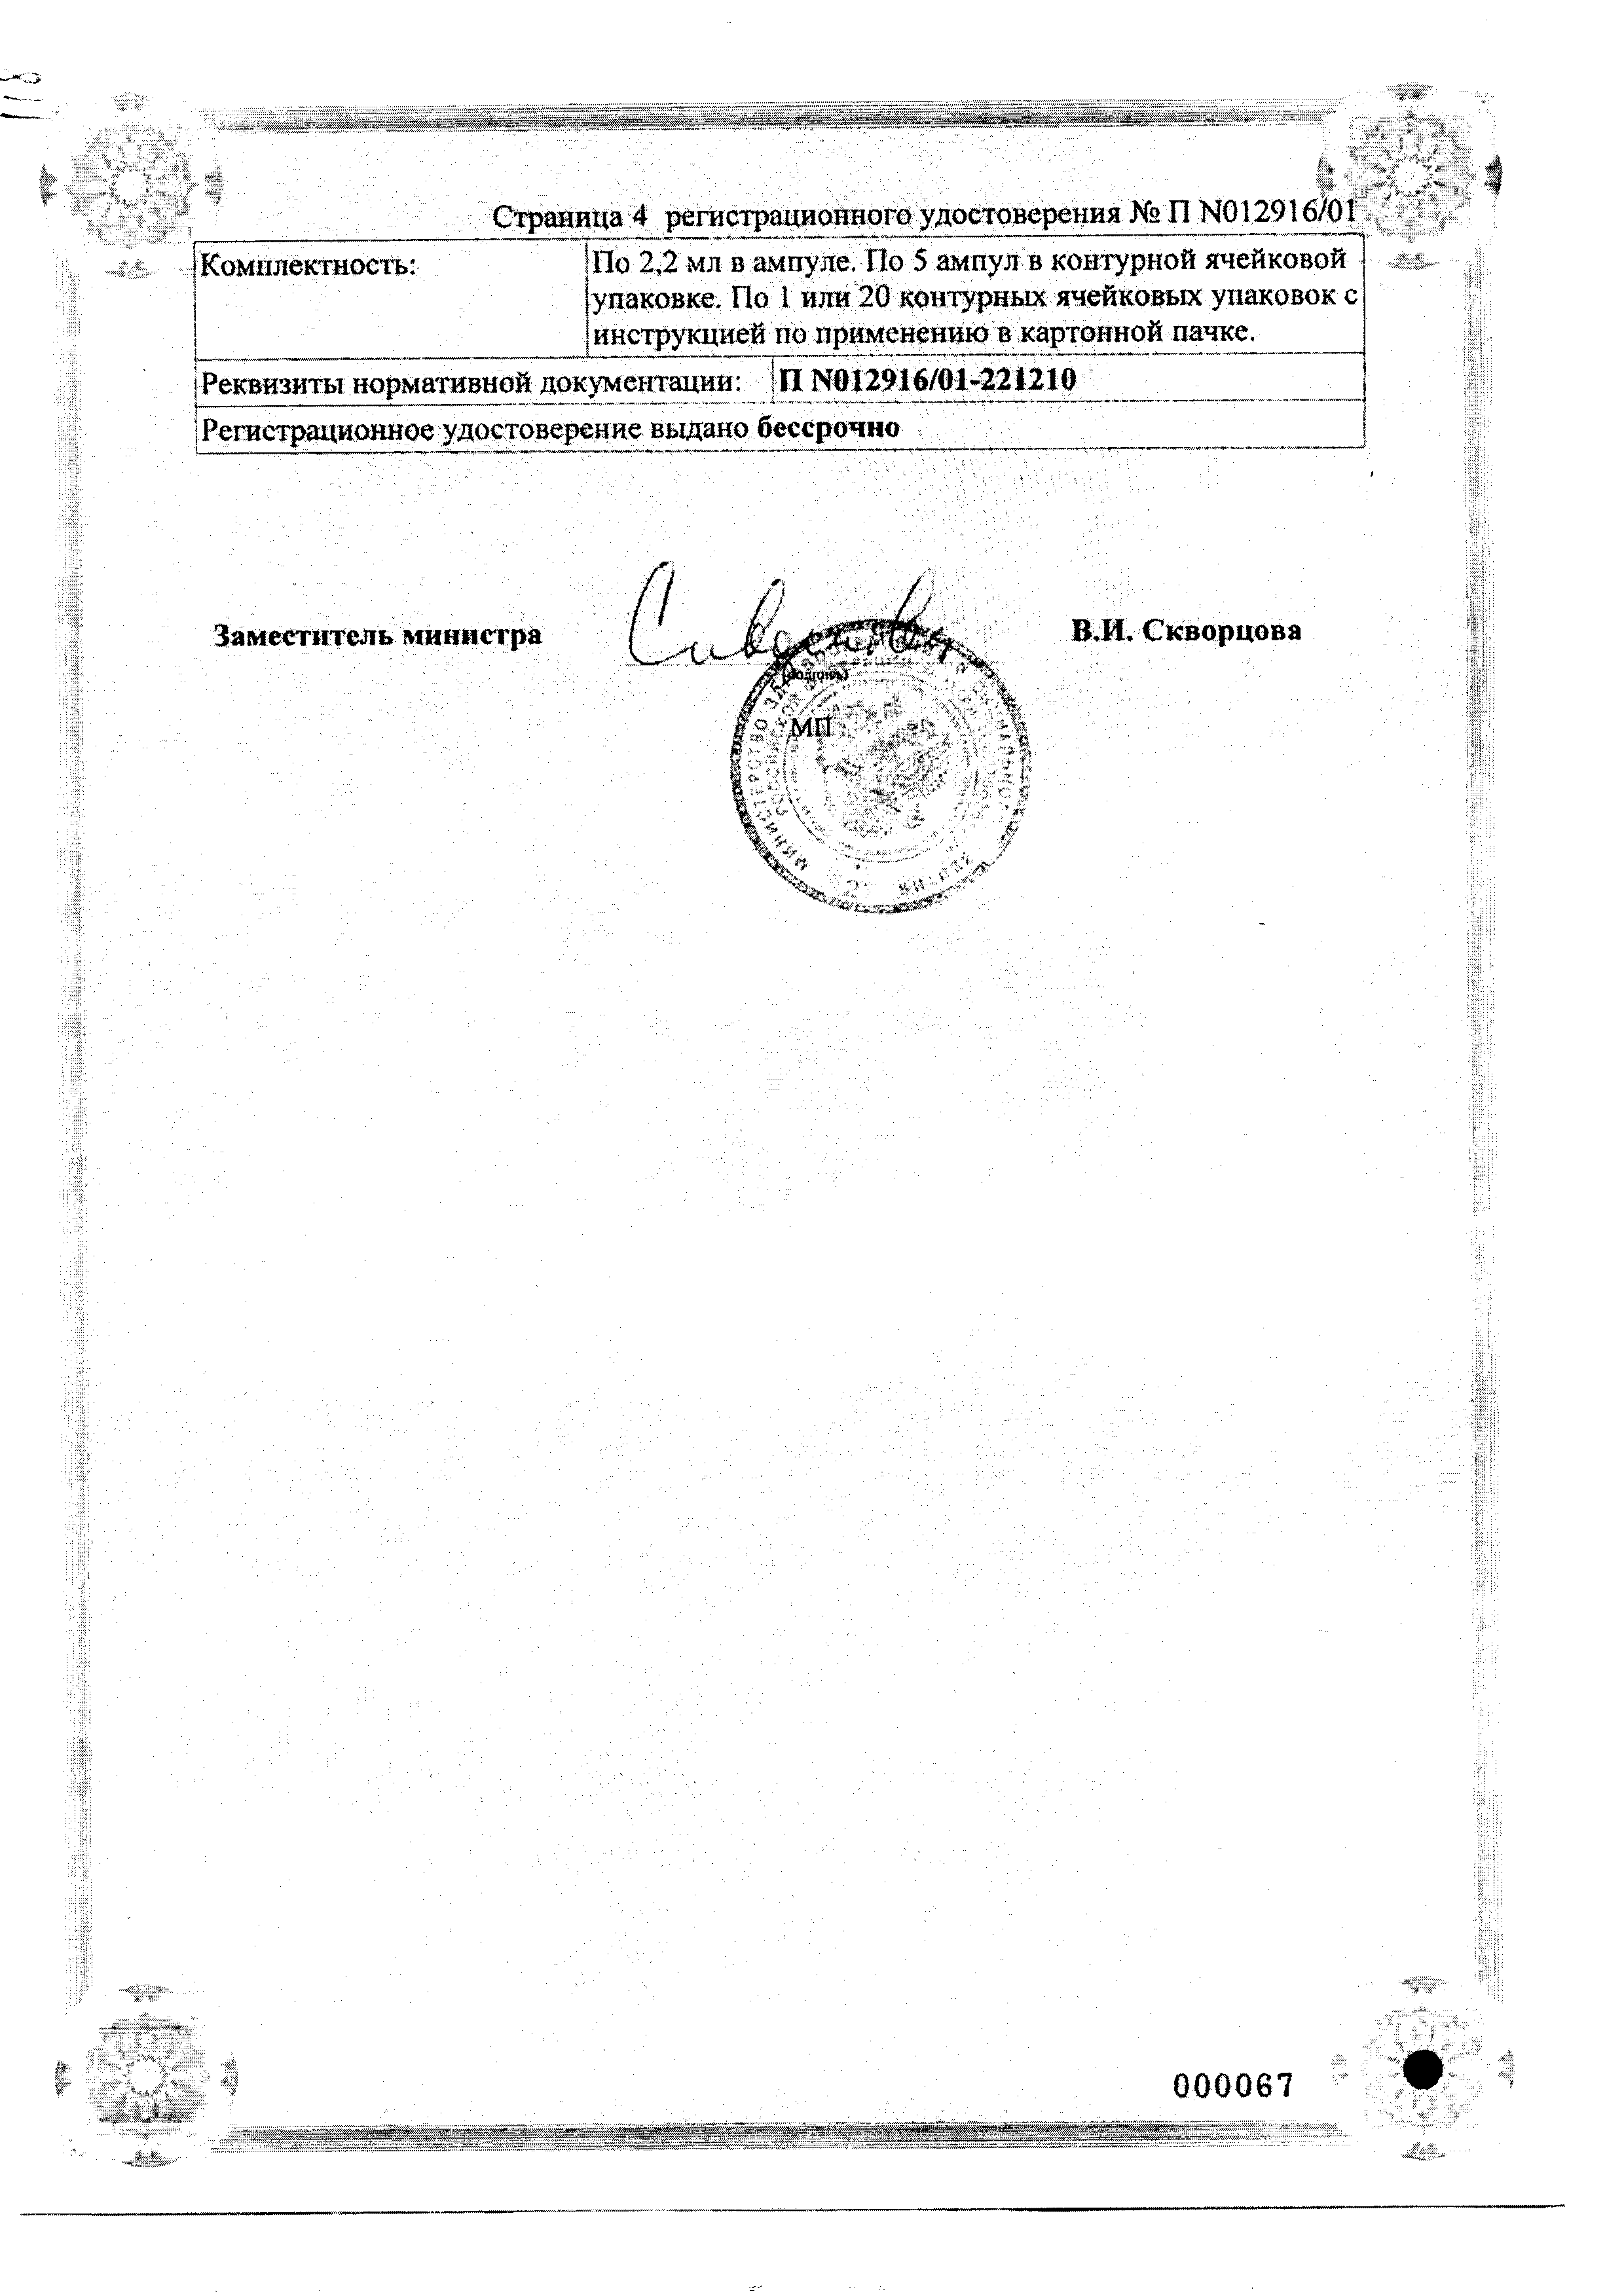 Мукоза композитум сертификат